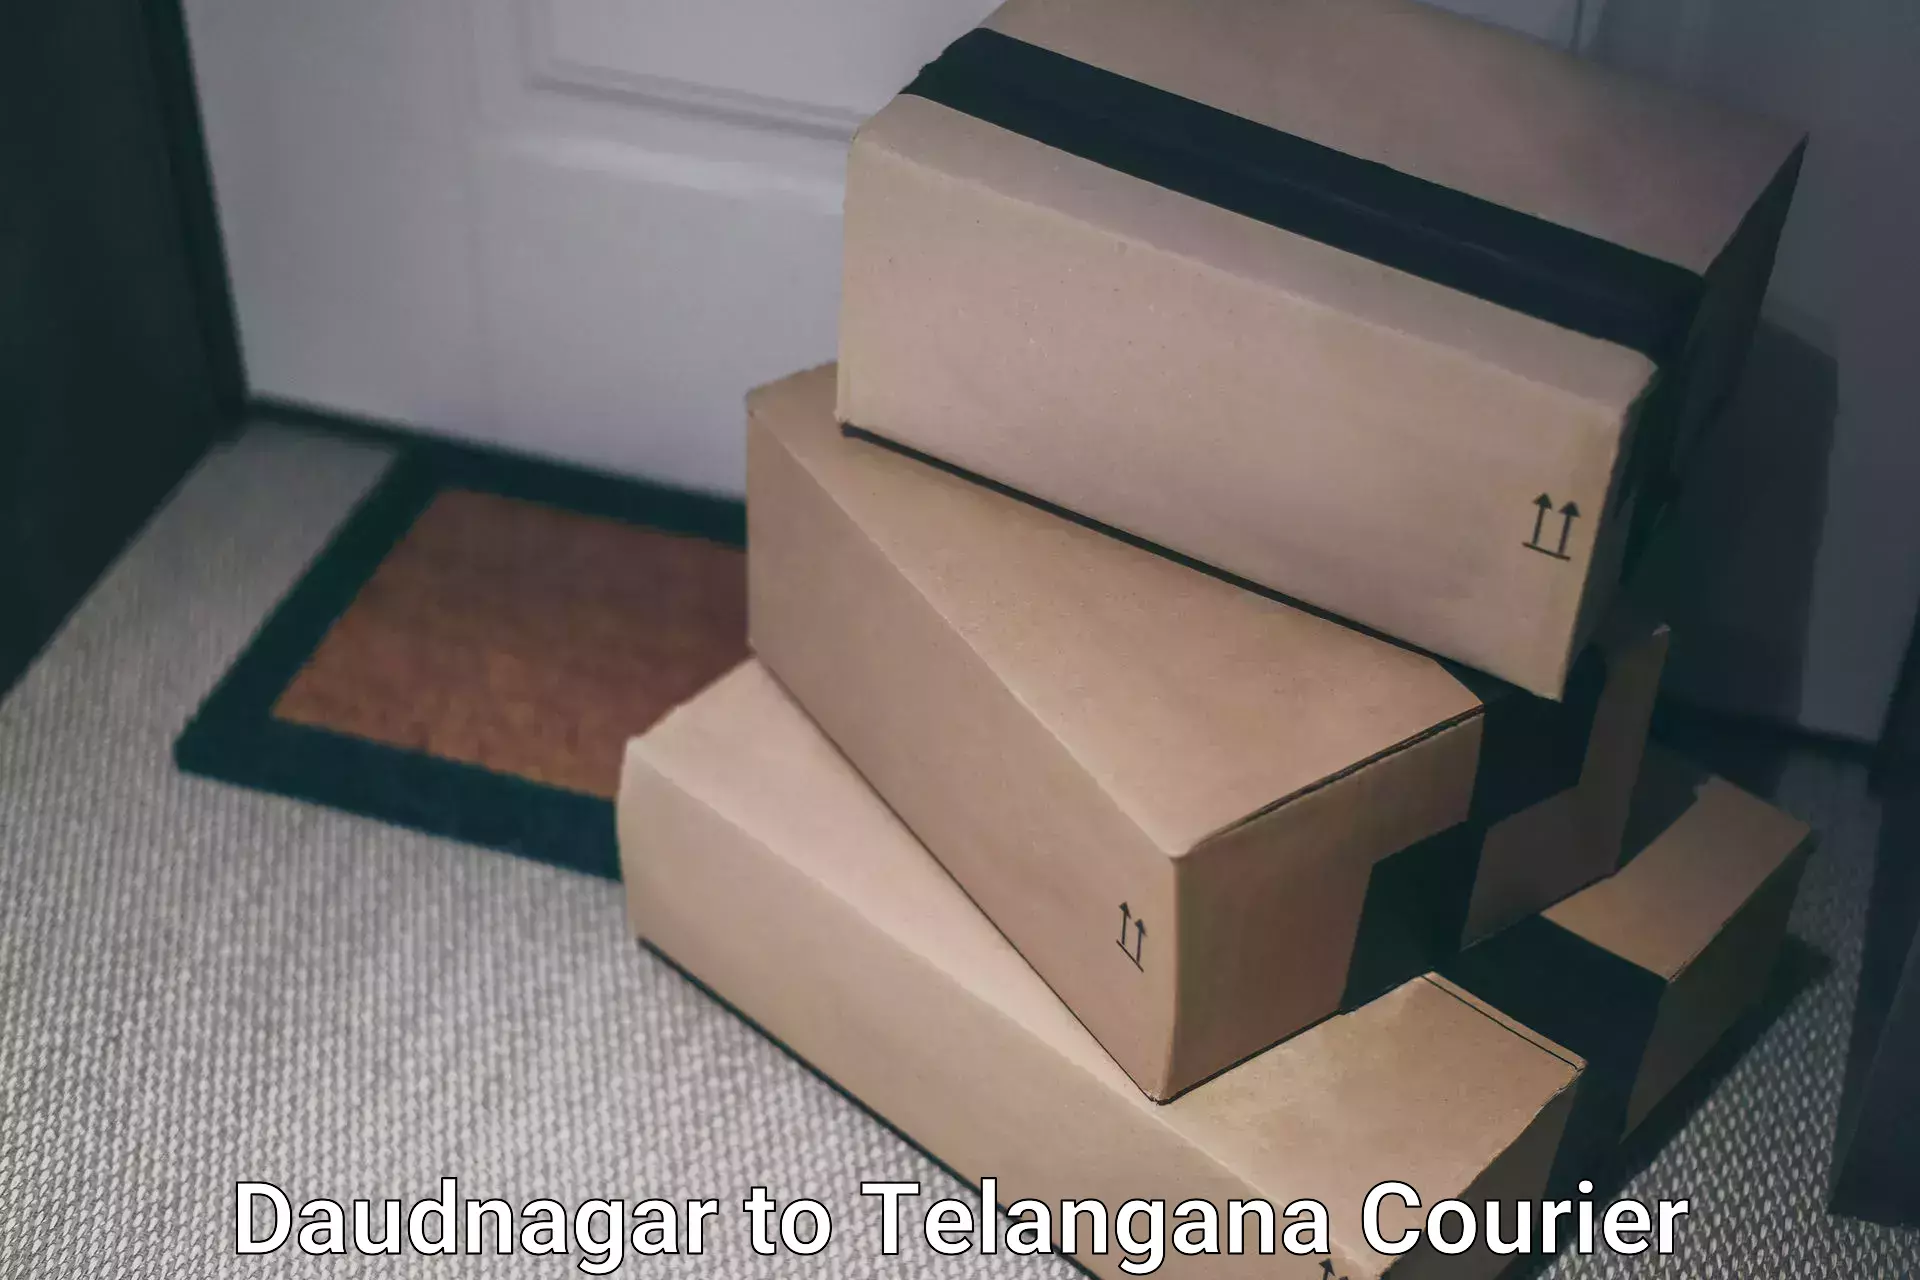 Doorstep delivery service Daudnagar to Telangana